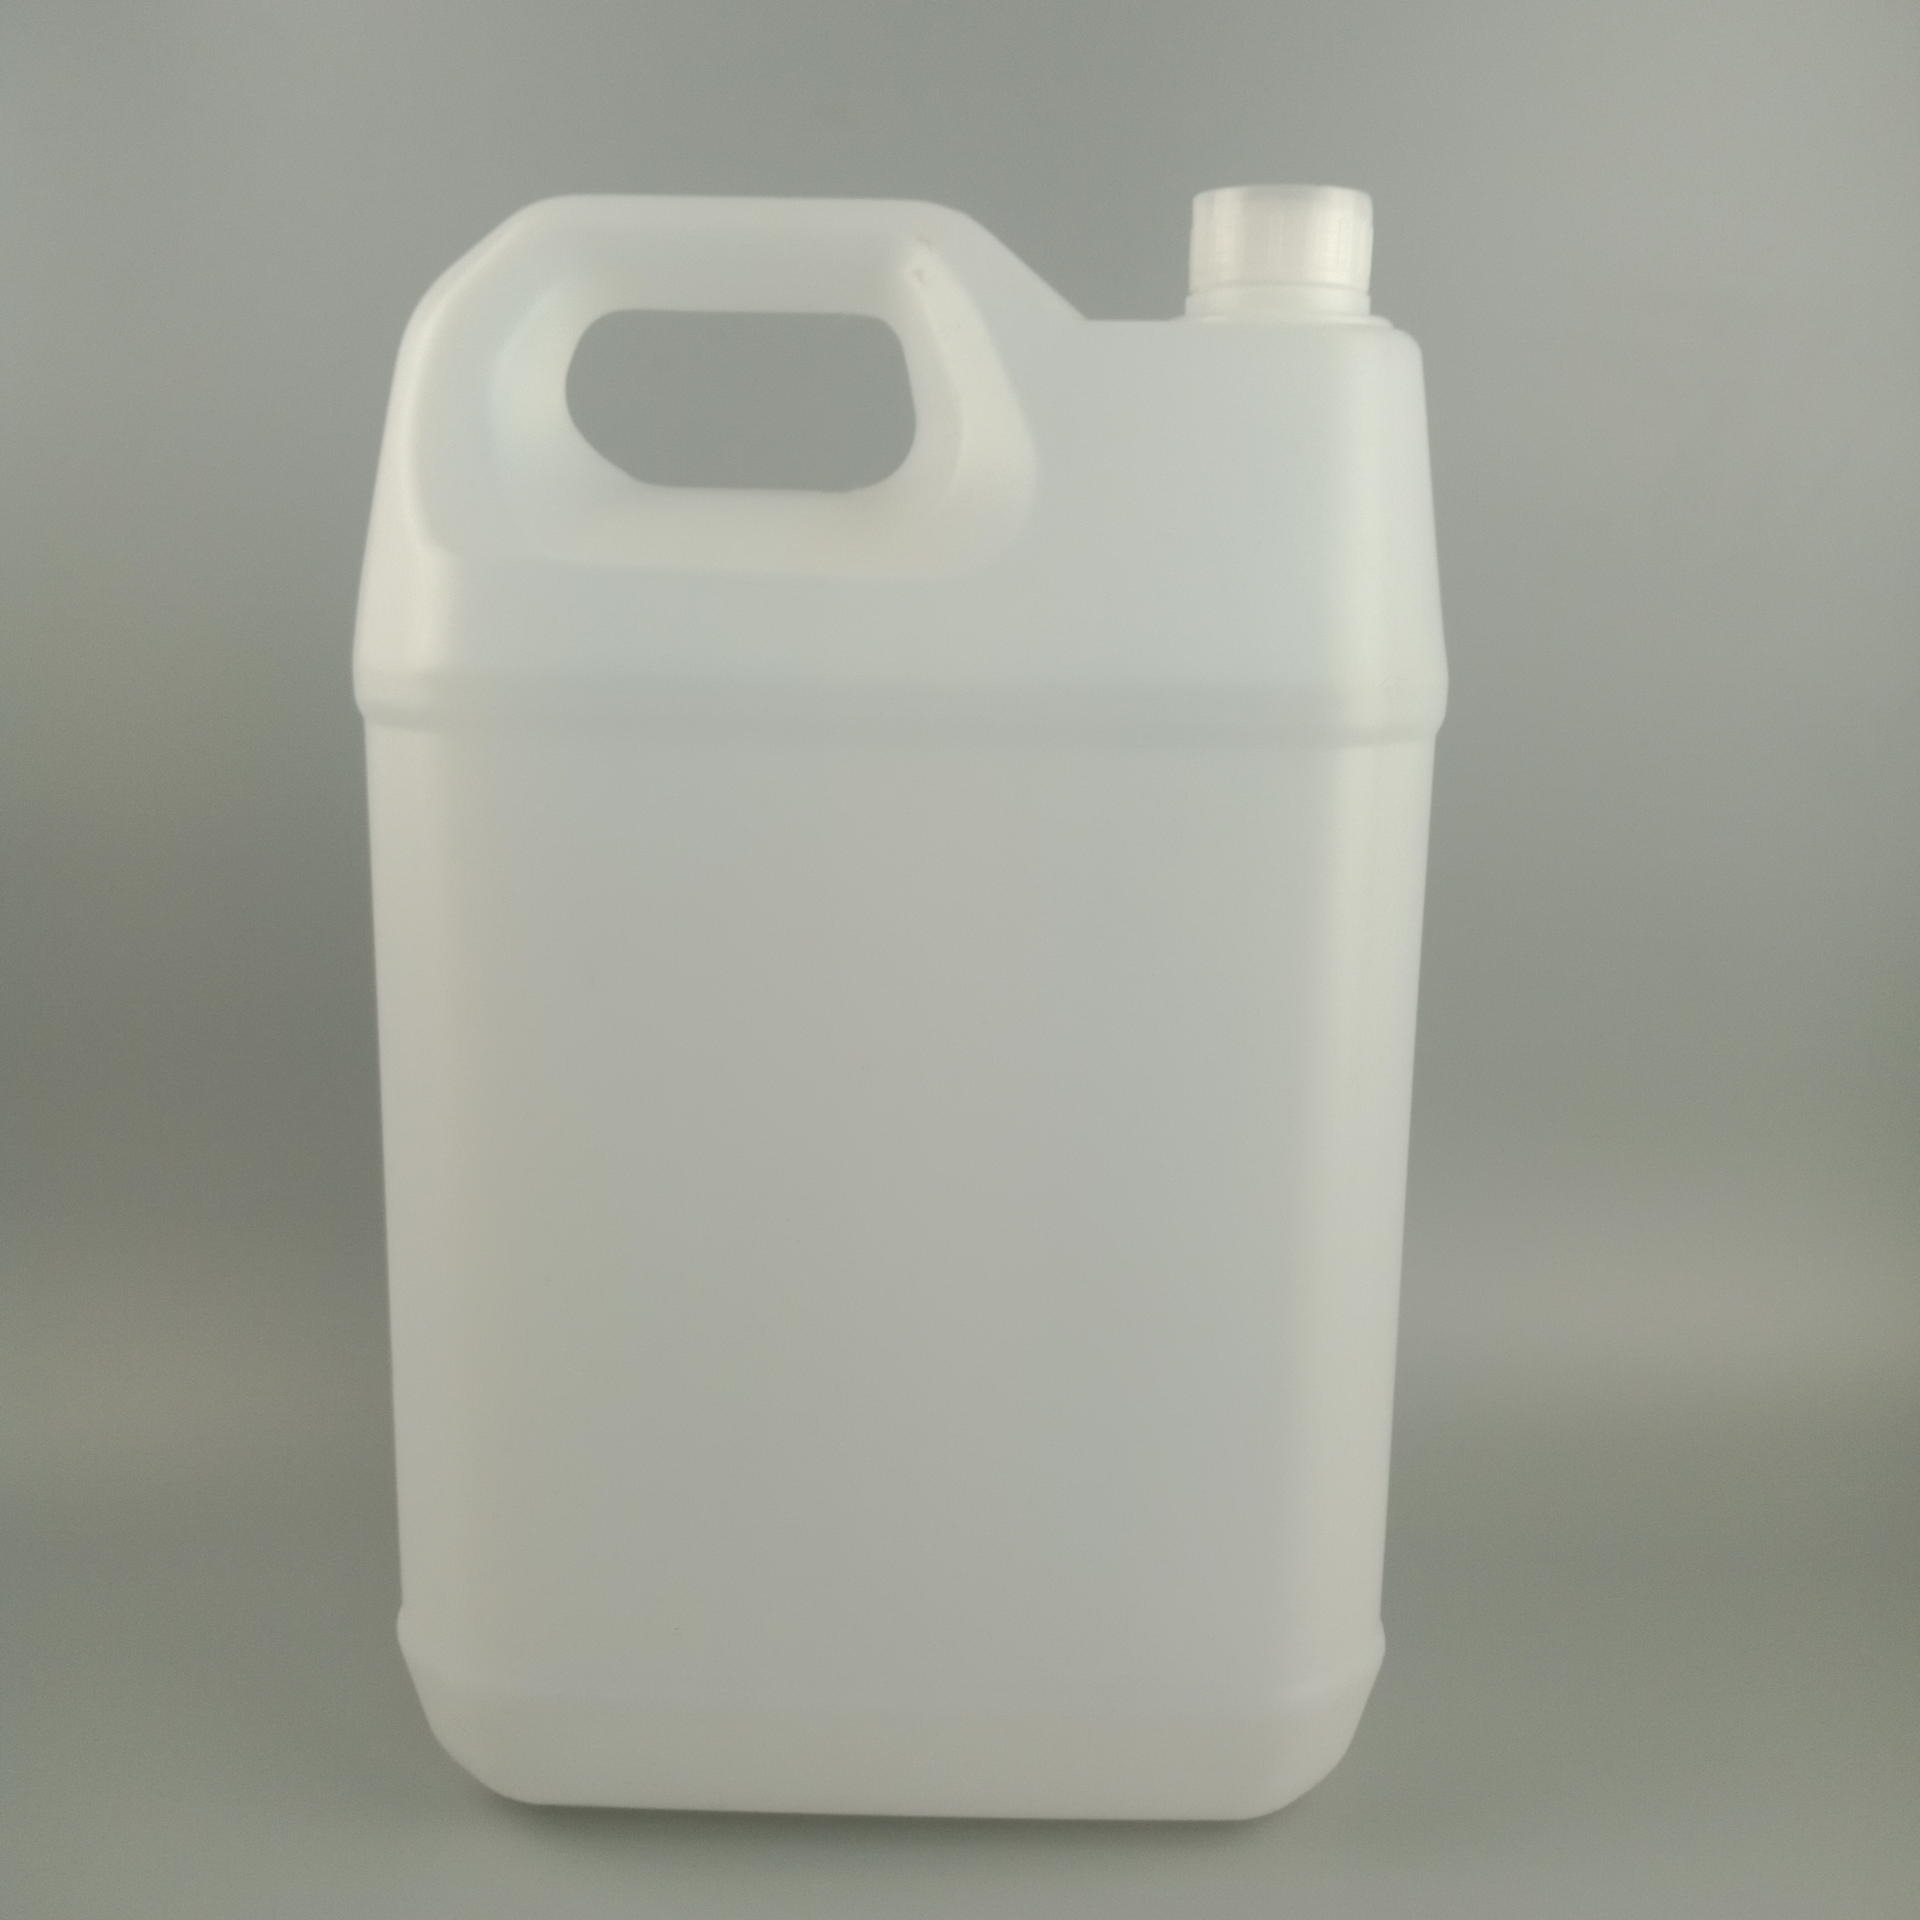 钜名供应 塑料瓶 塑料桶10升 5升 尿素桶 化工桶 堆码桶 可加工定制 设计瓶型 开模生产 为您一条龙服务